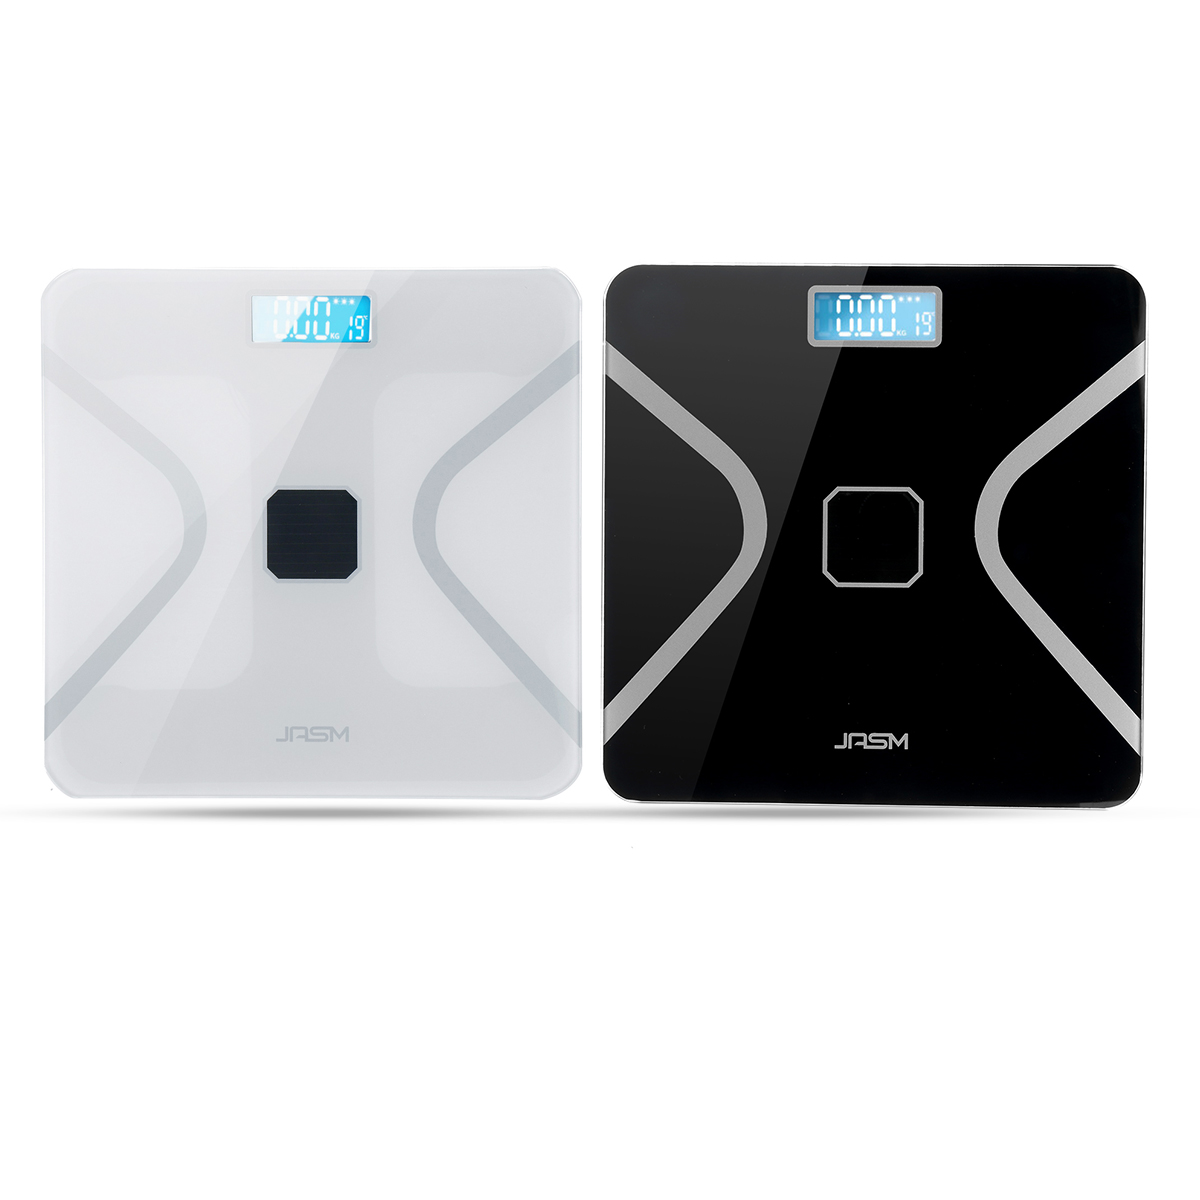 Digital-Wireless-Body-Fat-Scale-Analyzer-Healthy-Weight-Balance-Scale-BMI-Tester-1541962-9